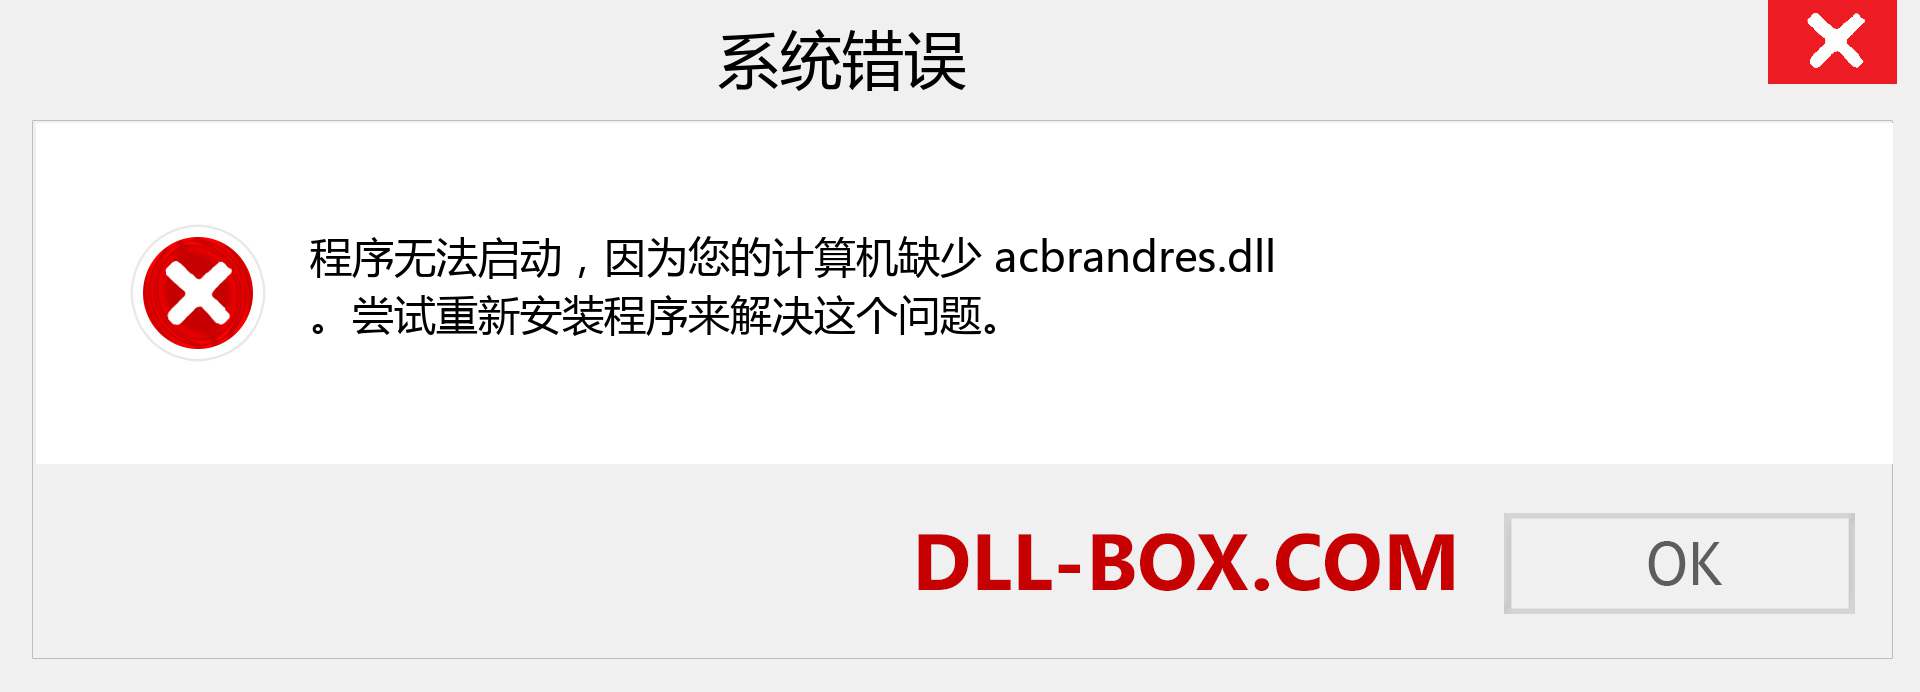 acbrandres.dll 文件丢失？。 适用于 Windows 7、8、10 的下载 - 修复 Windows、照片、图像上的 acbrandres dll 丢失错误